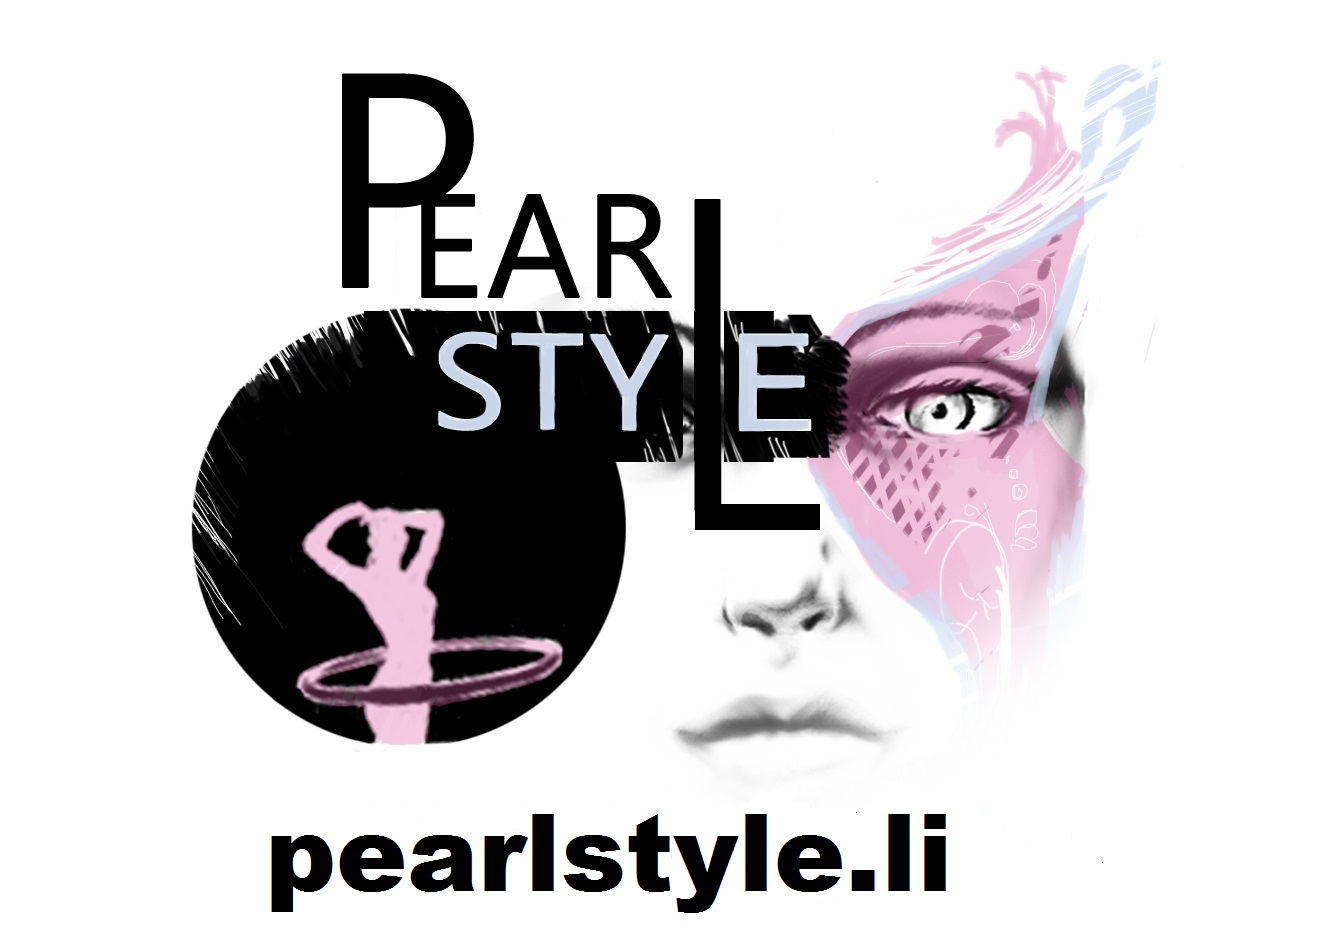 Pearl style, Geraldine Siller-Gasser